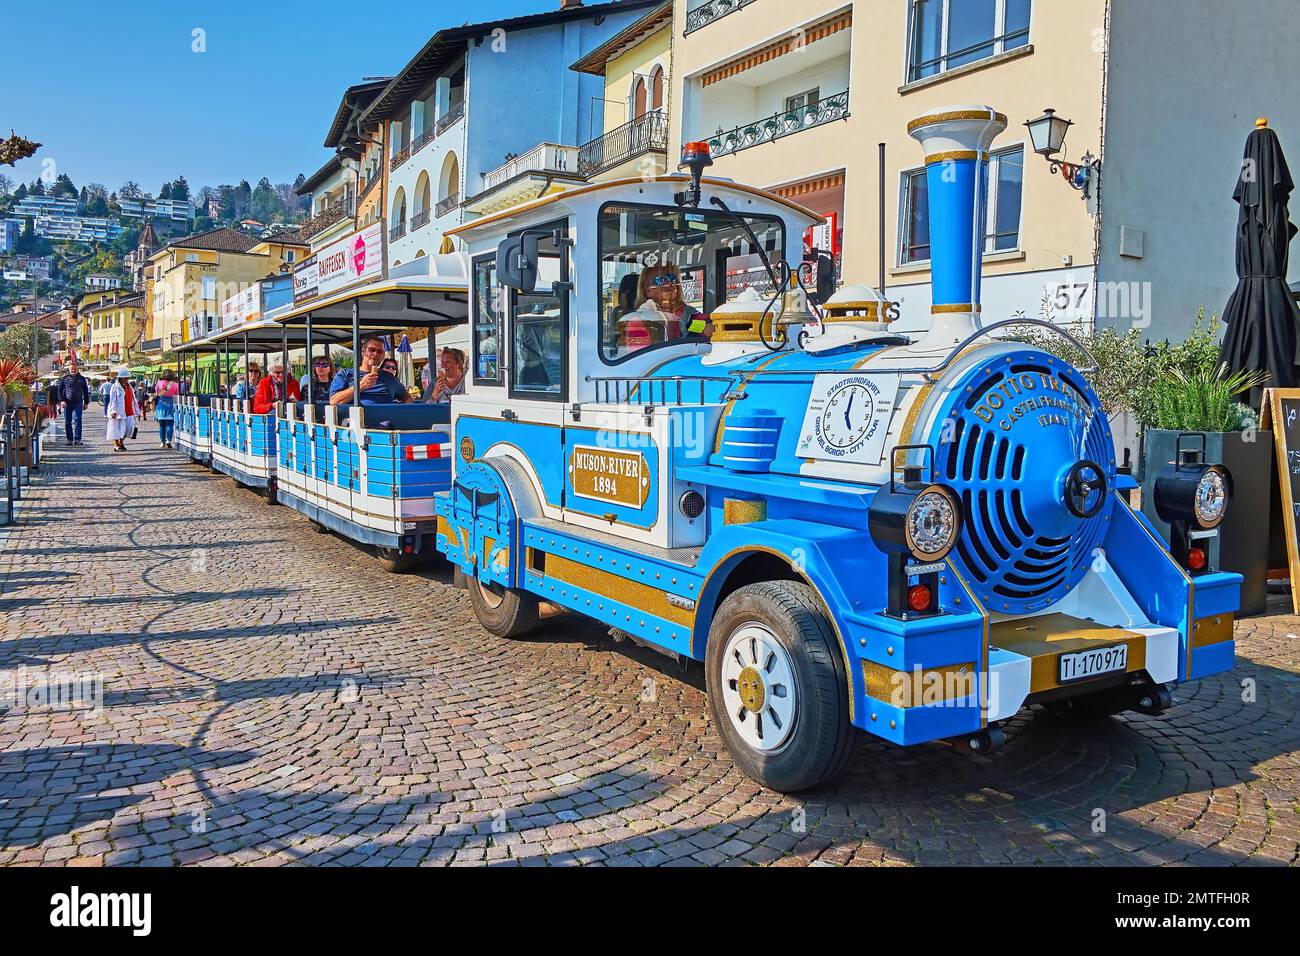 ASCONA, SUIZA - 28 DE MARZO de 2022: La locomotora azul vintage del tren turístico en la Piazza Giuseppe Motta, el 28 de marzo en Ascona Foto de stock